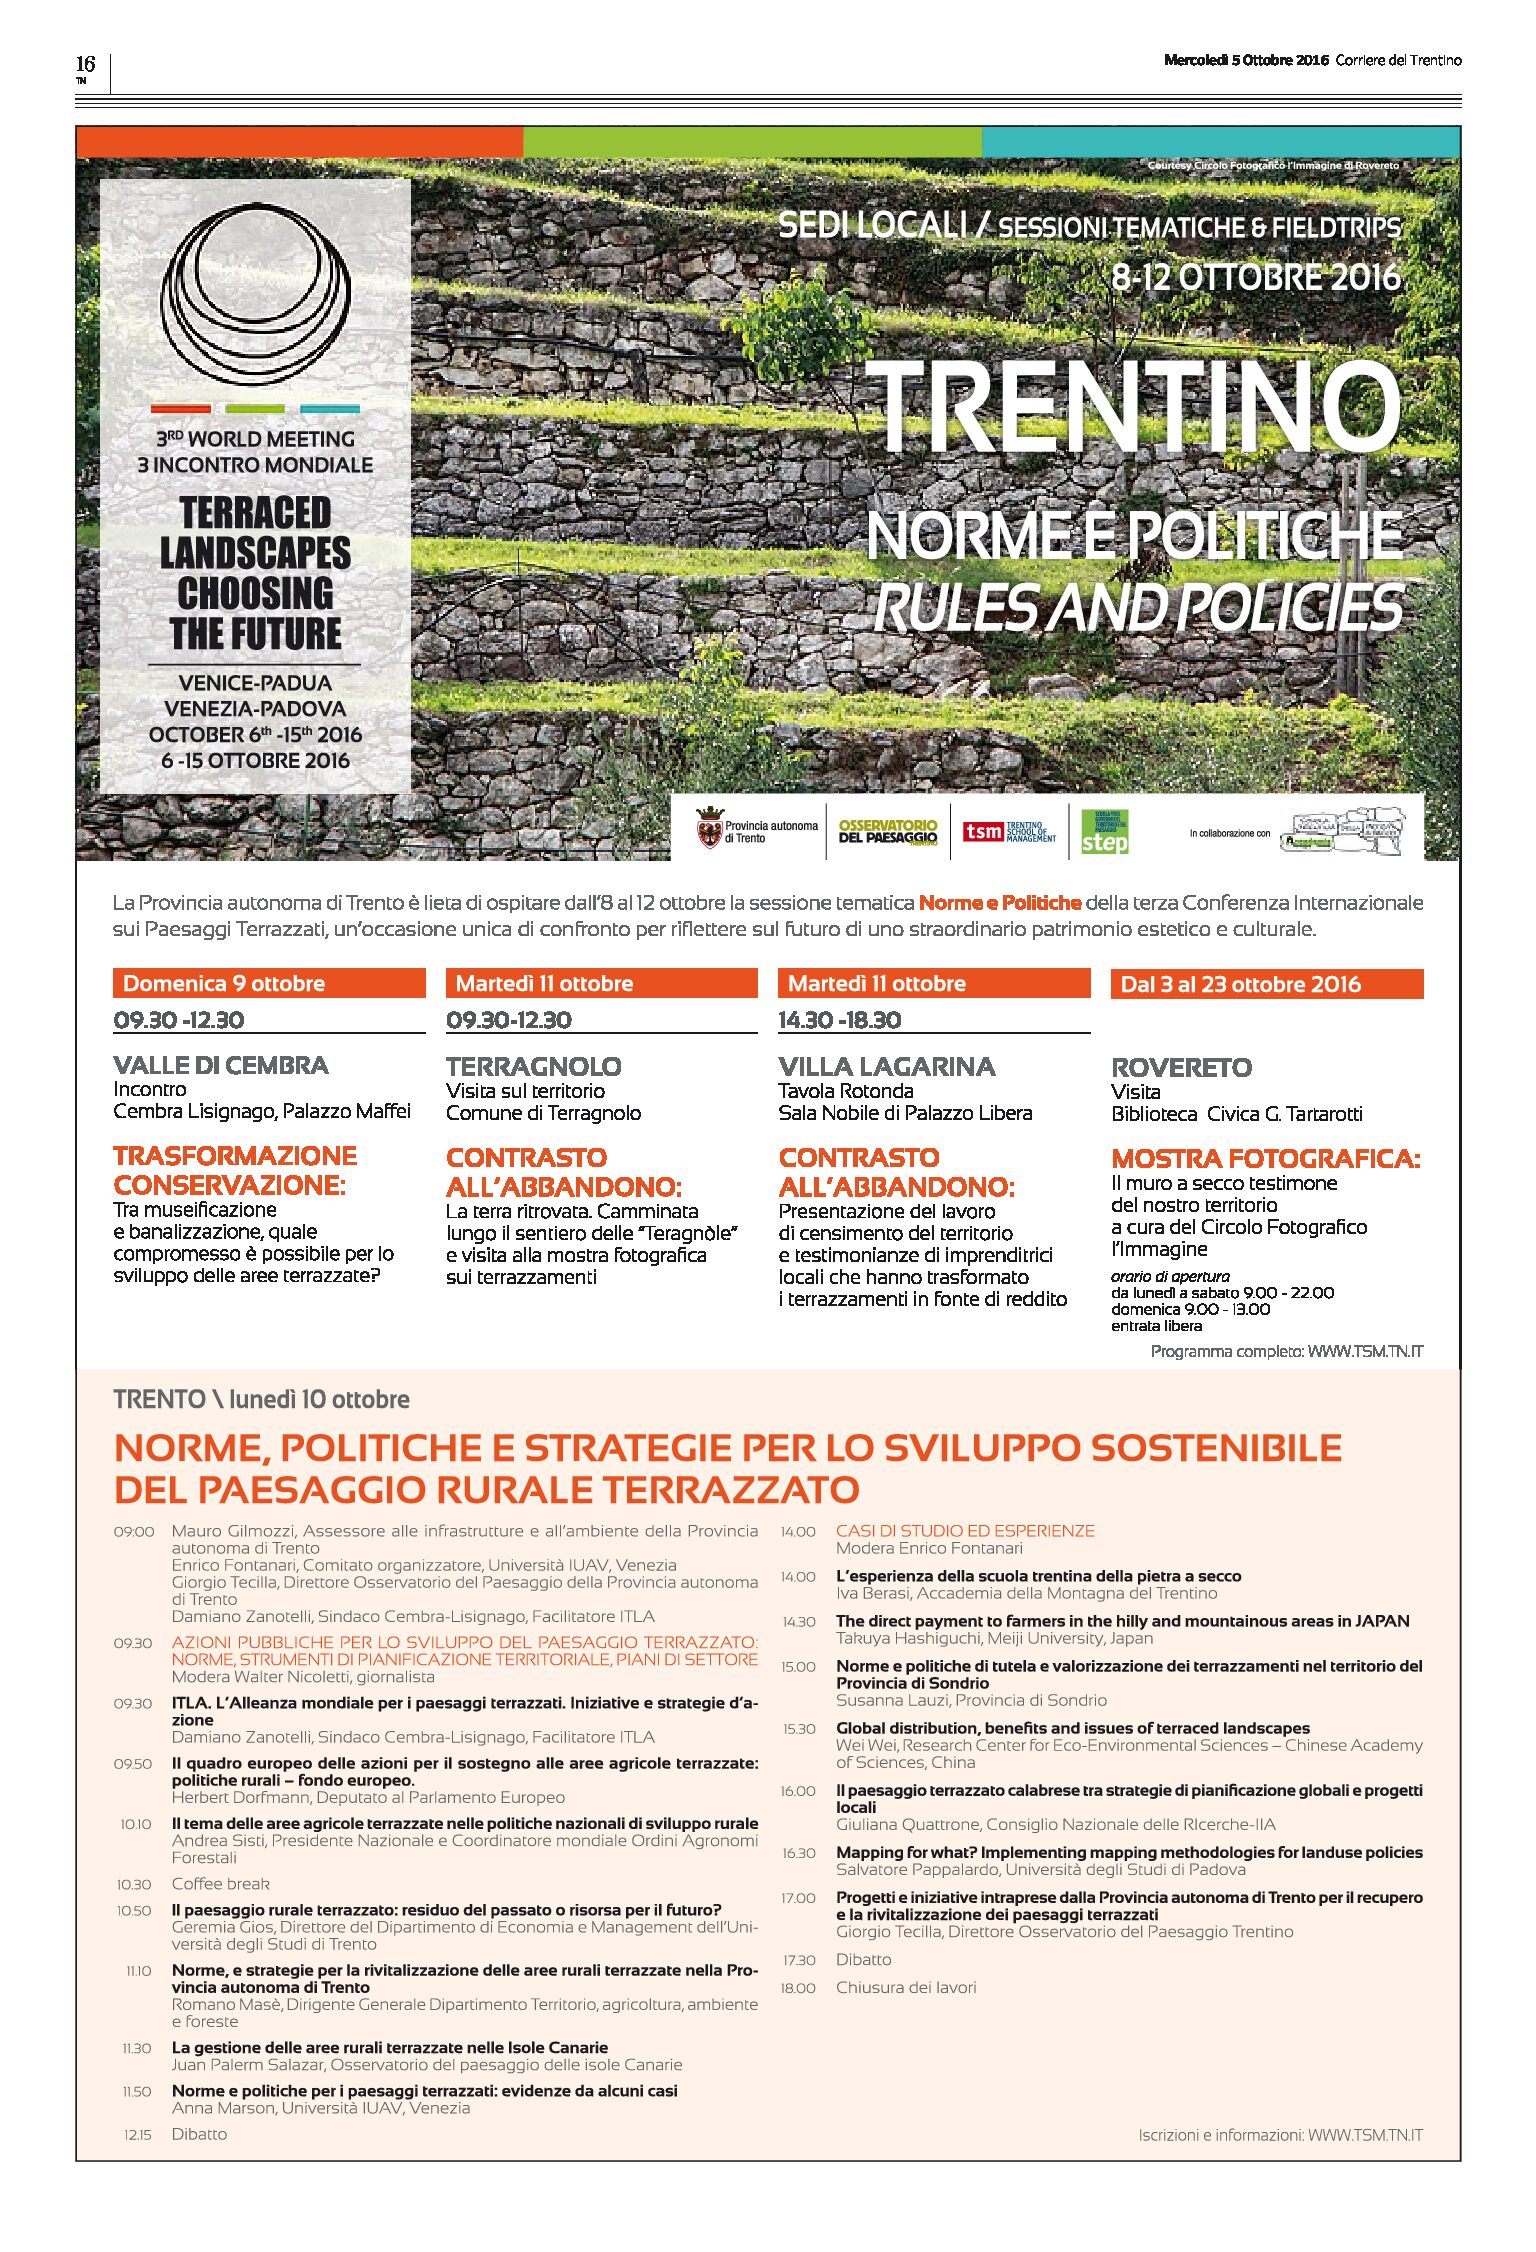 Trentino: Sessione “Norme e politiche”, del meeting mondiale “Terraced landscapes choosing the future”